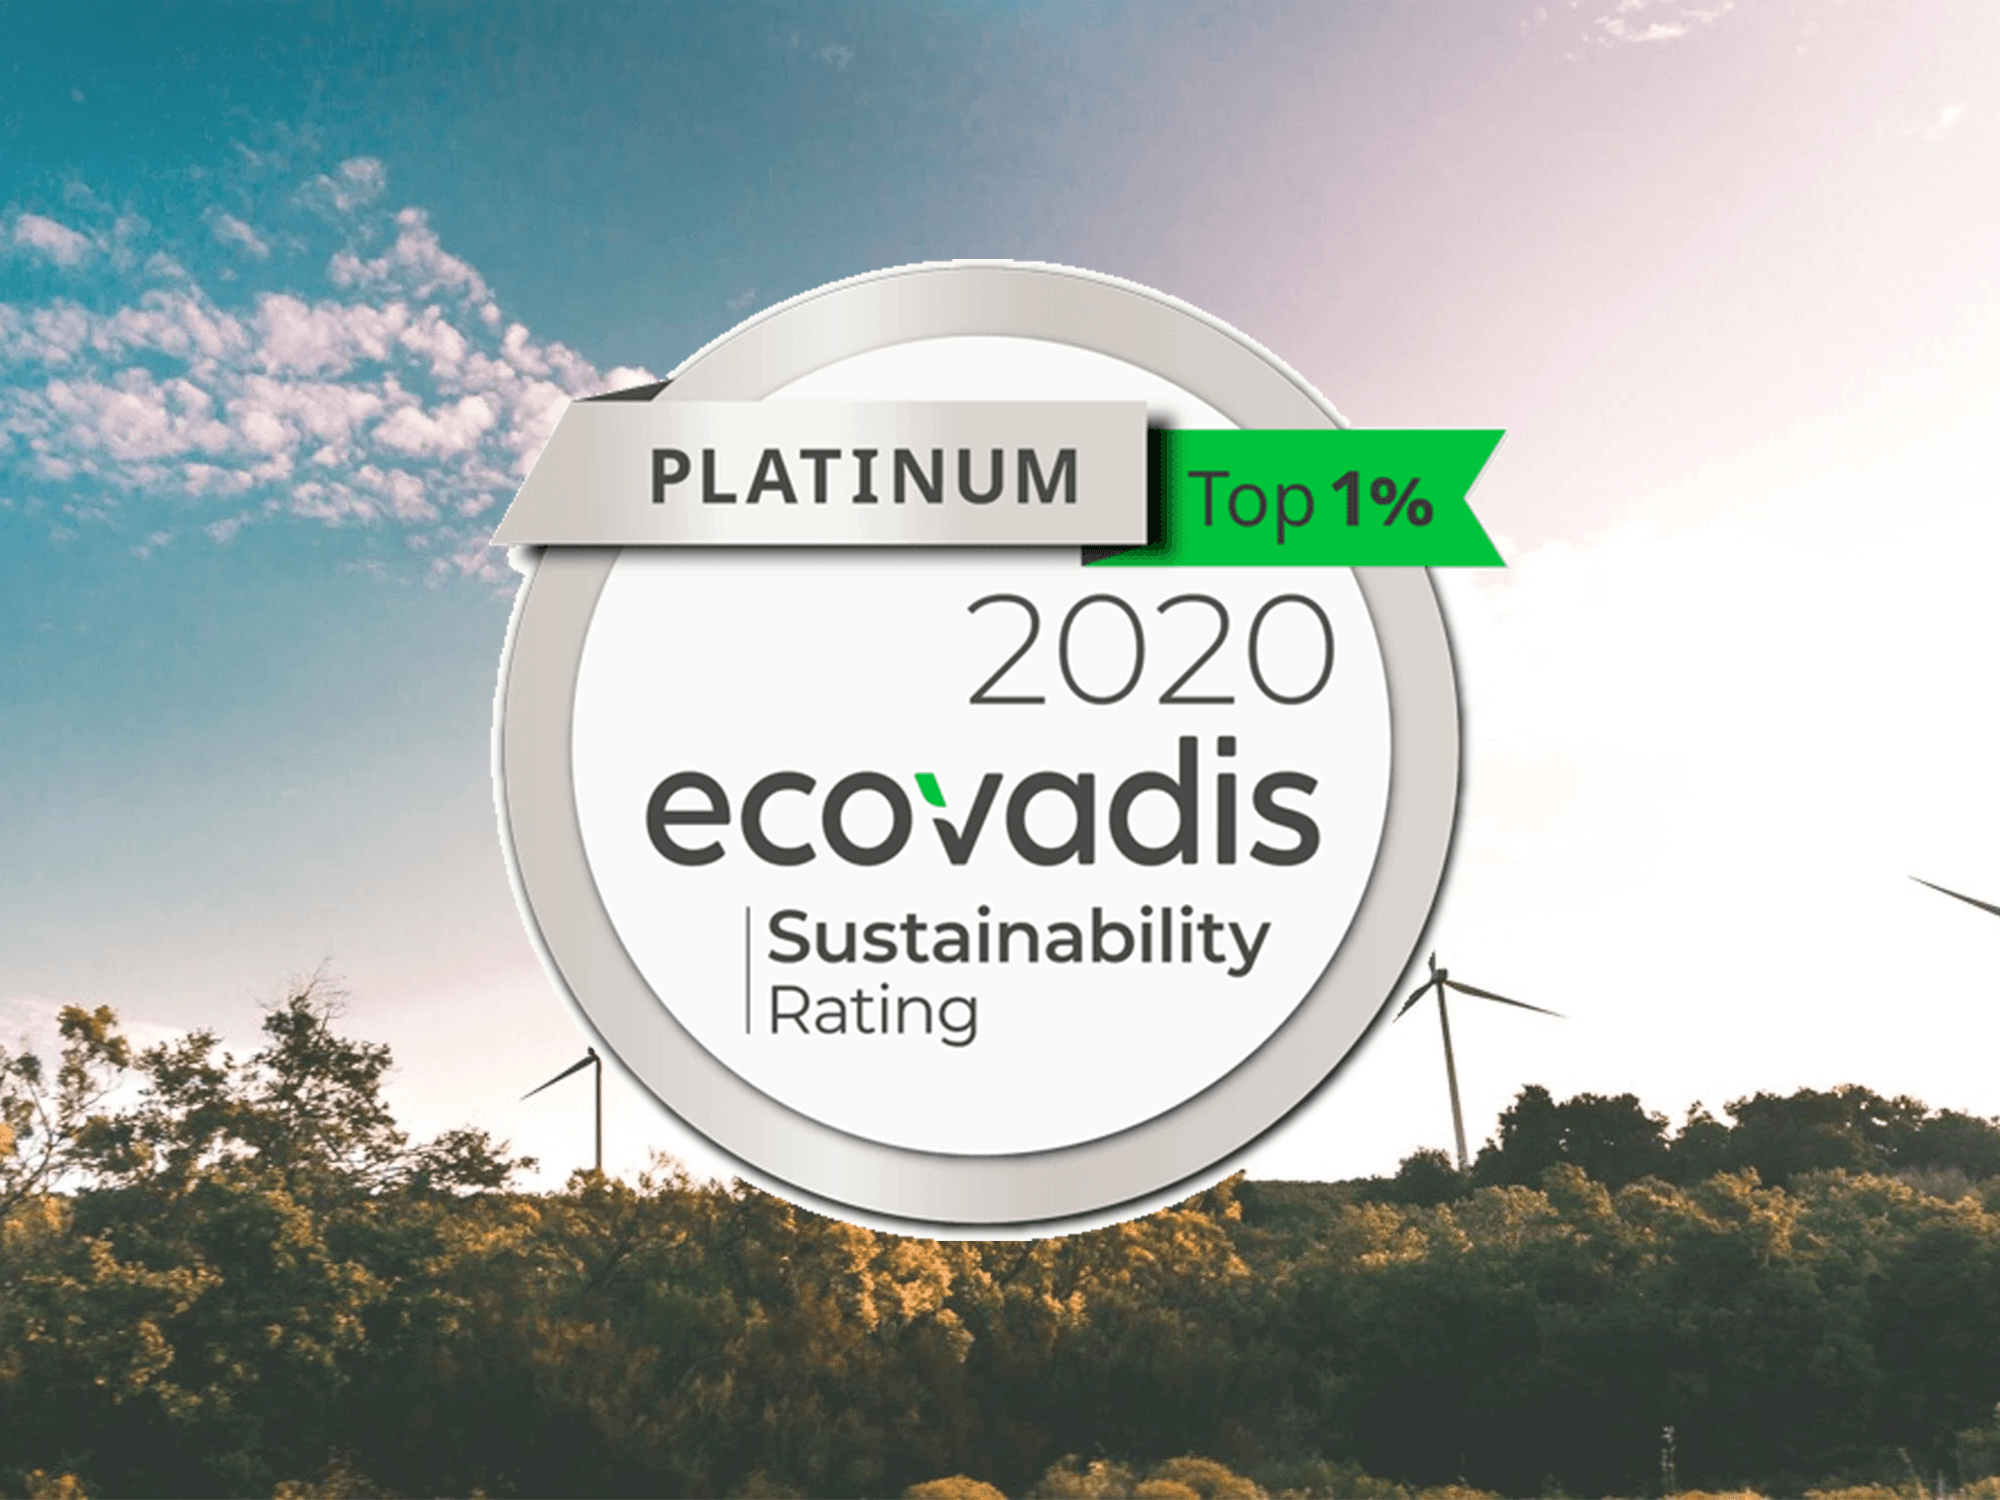 MA mit dem "Platin" Rating von EcoVadis für Nachhaltigkeit ausgezeichnet